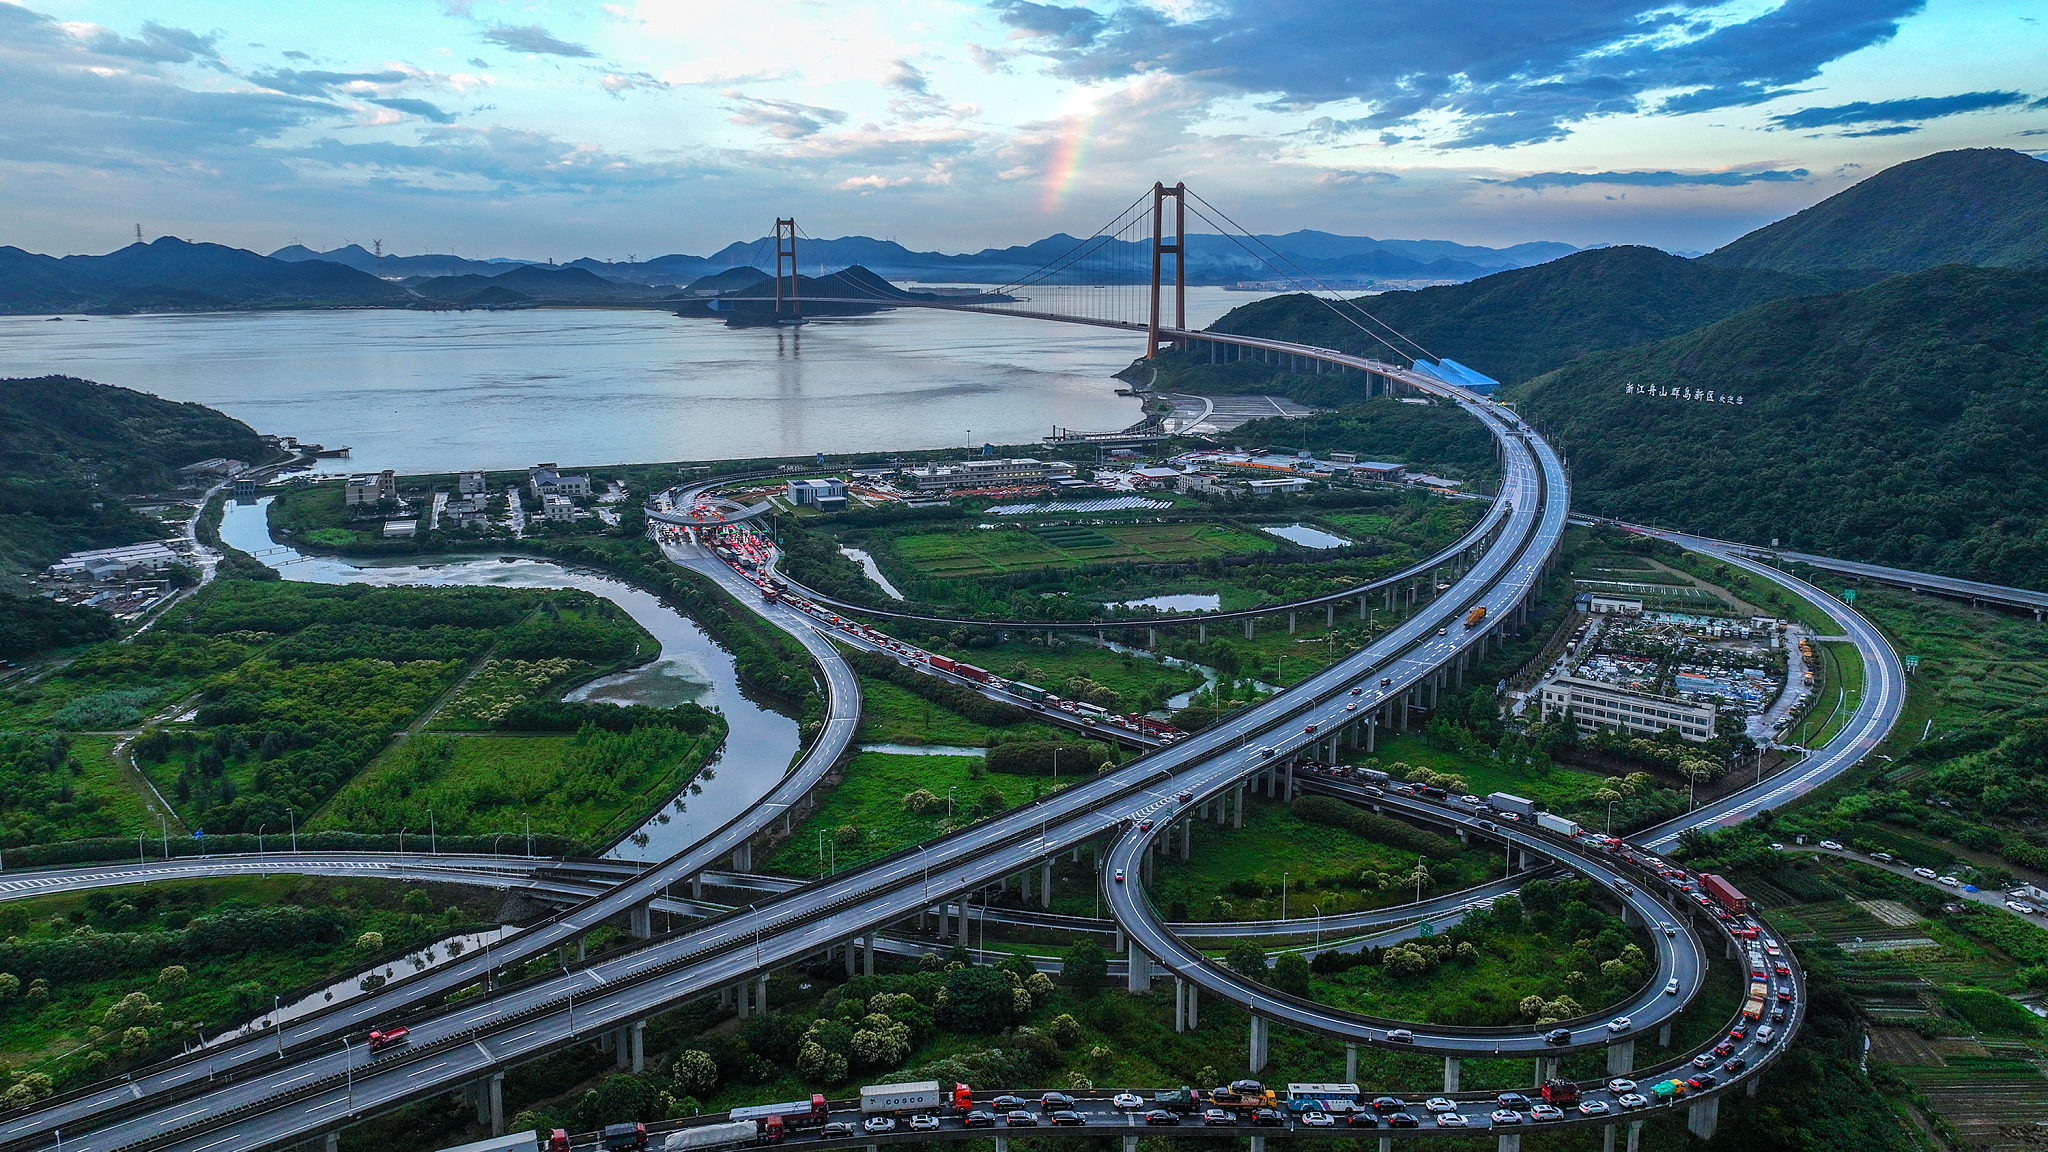 A photo showing the Zhoushan Cross-sea bridge, June 22, 2022. /CFP